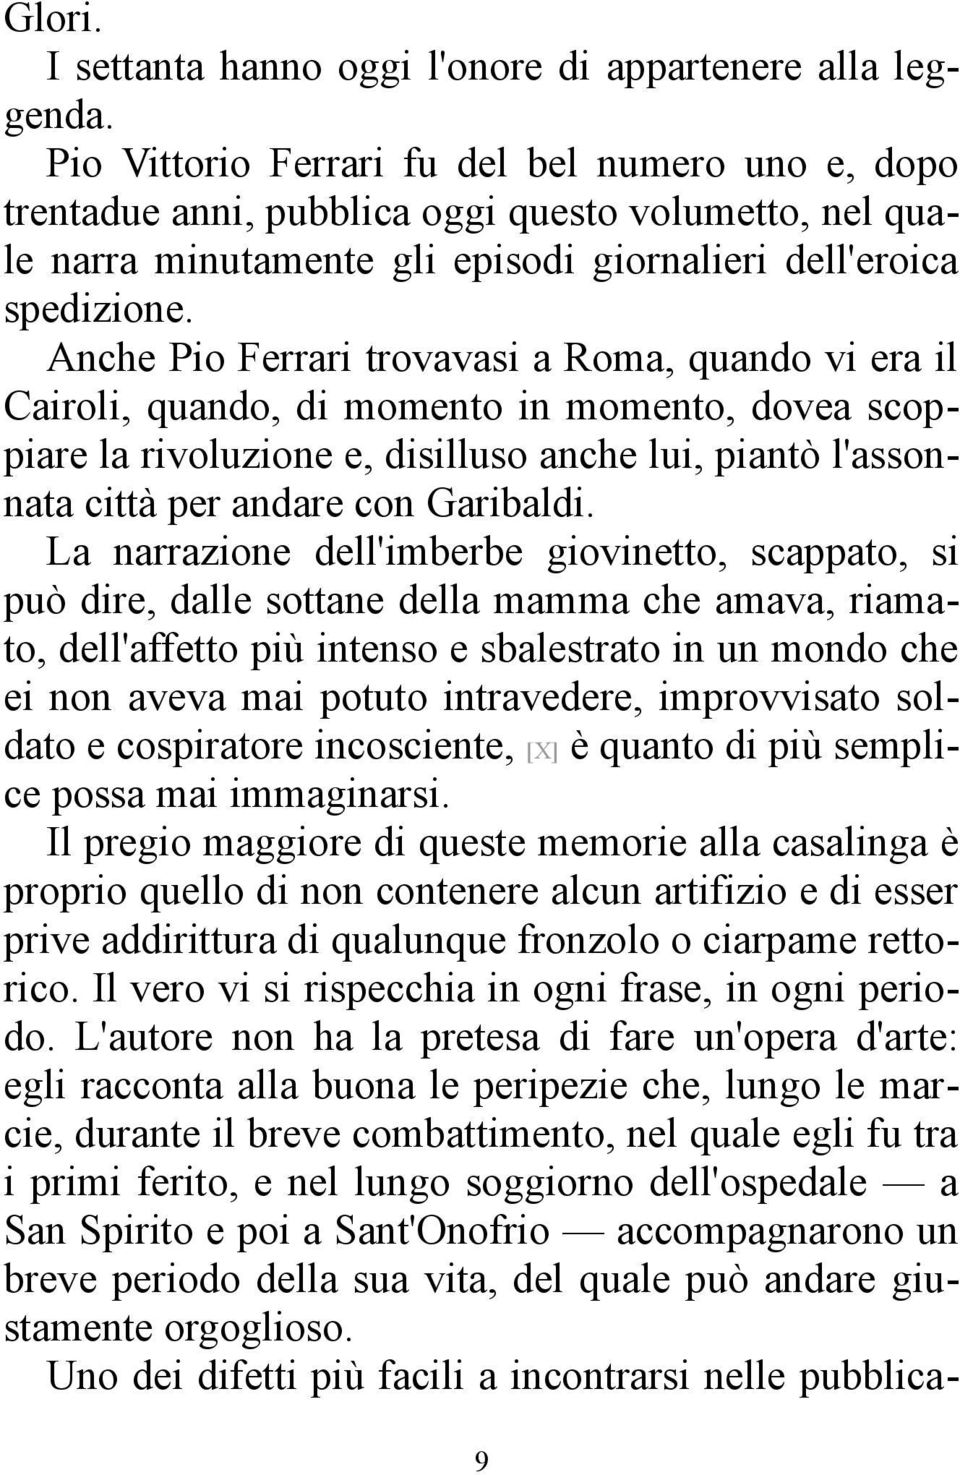 Anche Pio Ferrari trovavasi a Roma, quando vi era il Cairoli, quando, di momento in momento, dovea scoppiare la rivoluzione e, disilluso anche lui, piantò l'assonnata città per andare con Garibaldi.